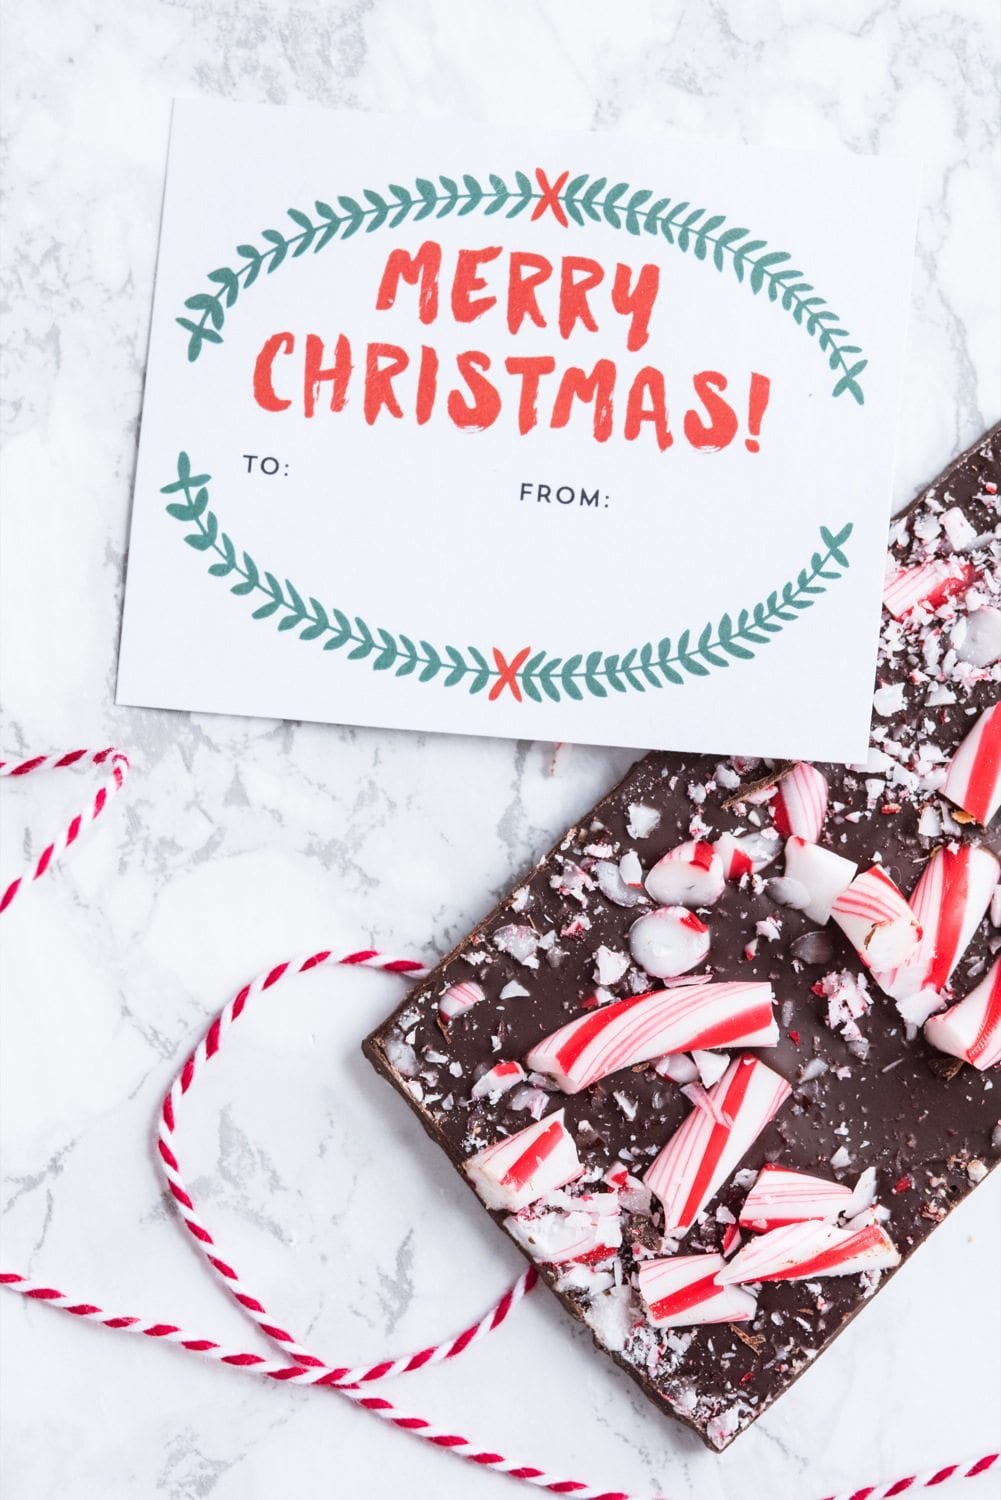 6 Christmas Chocolate Bark Recipes | Homemade Christmas gifts, Christmas recipes and more from @cydconverse